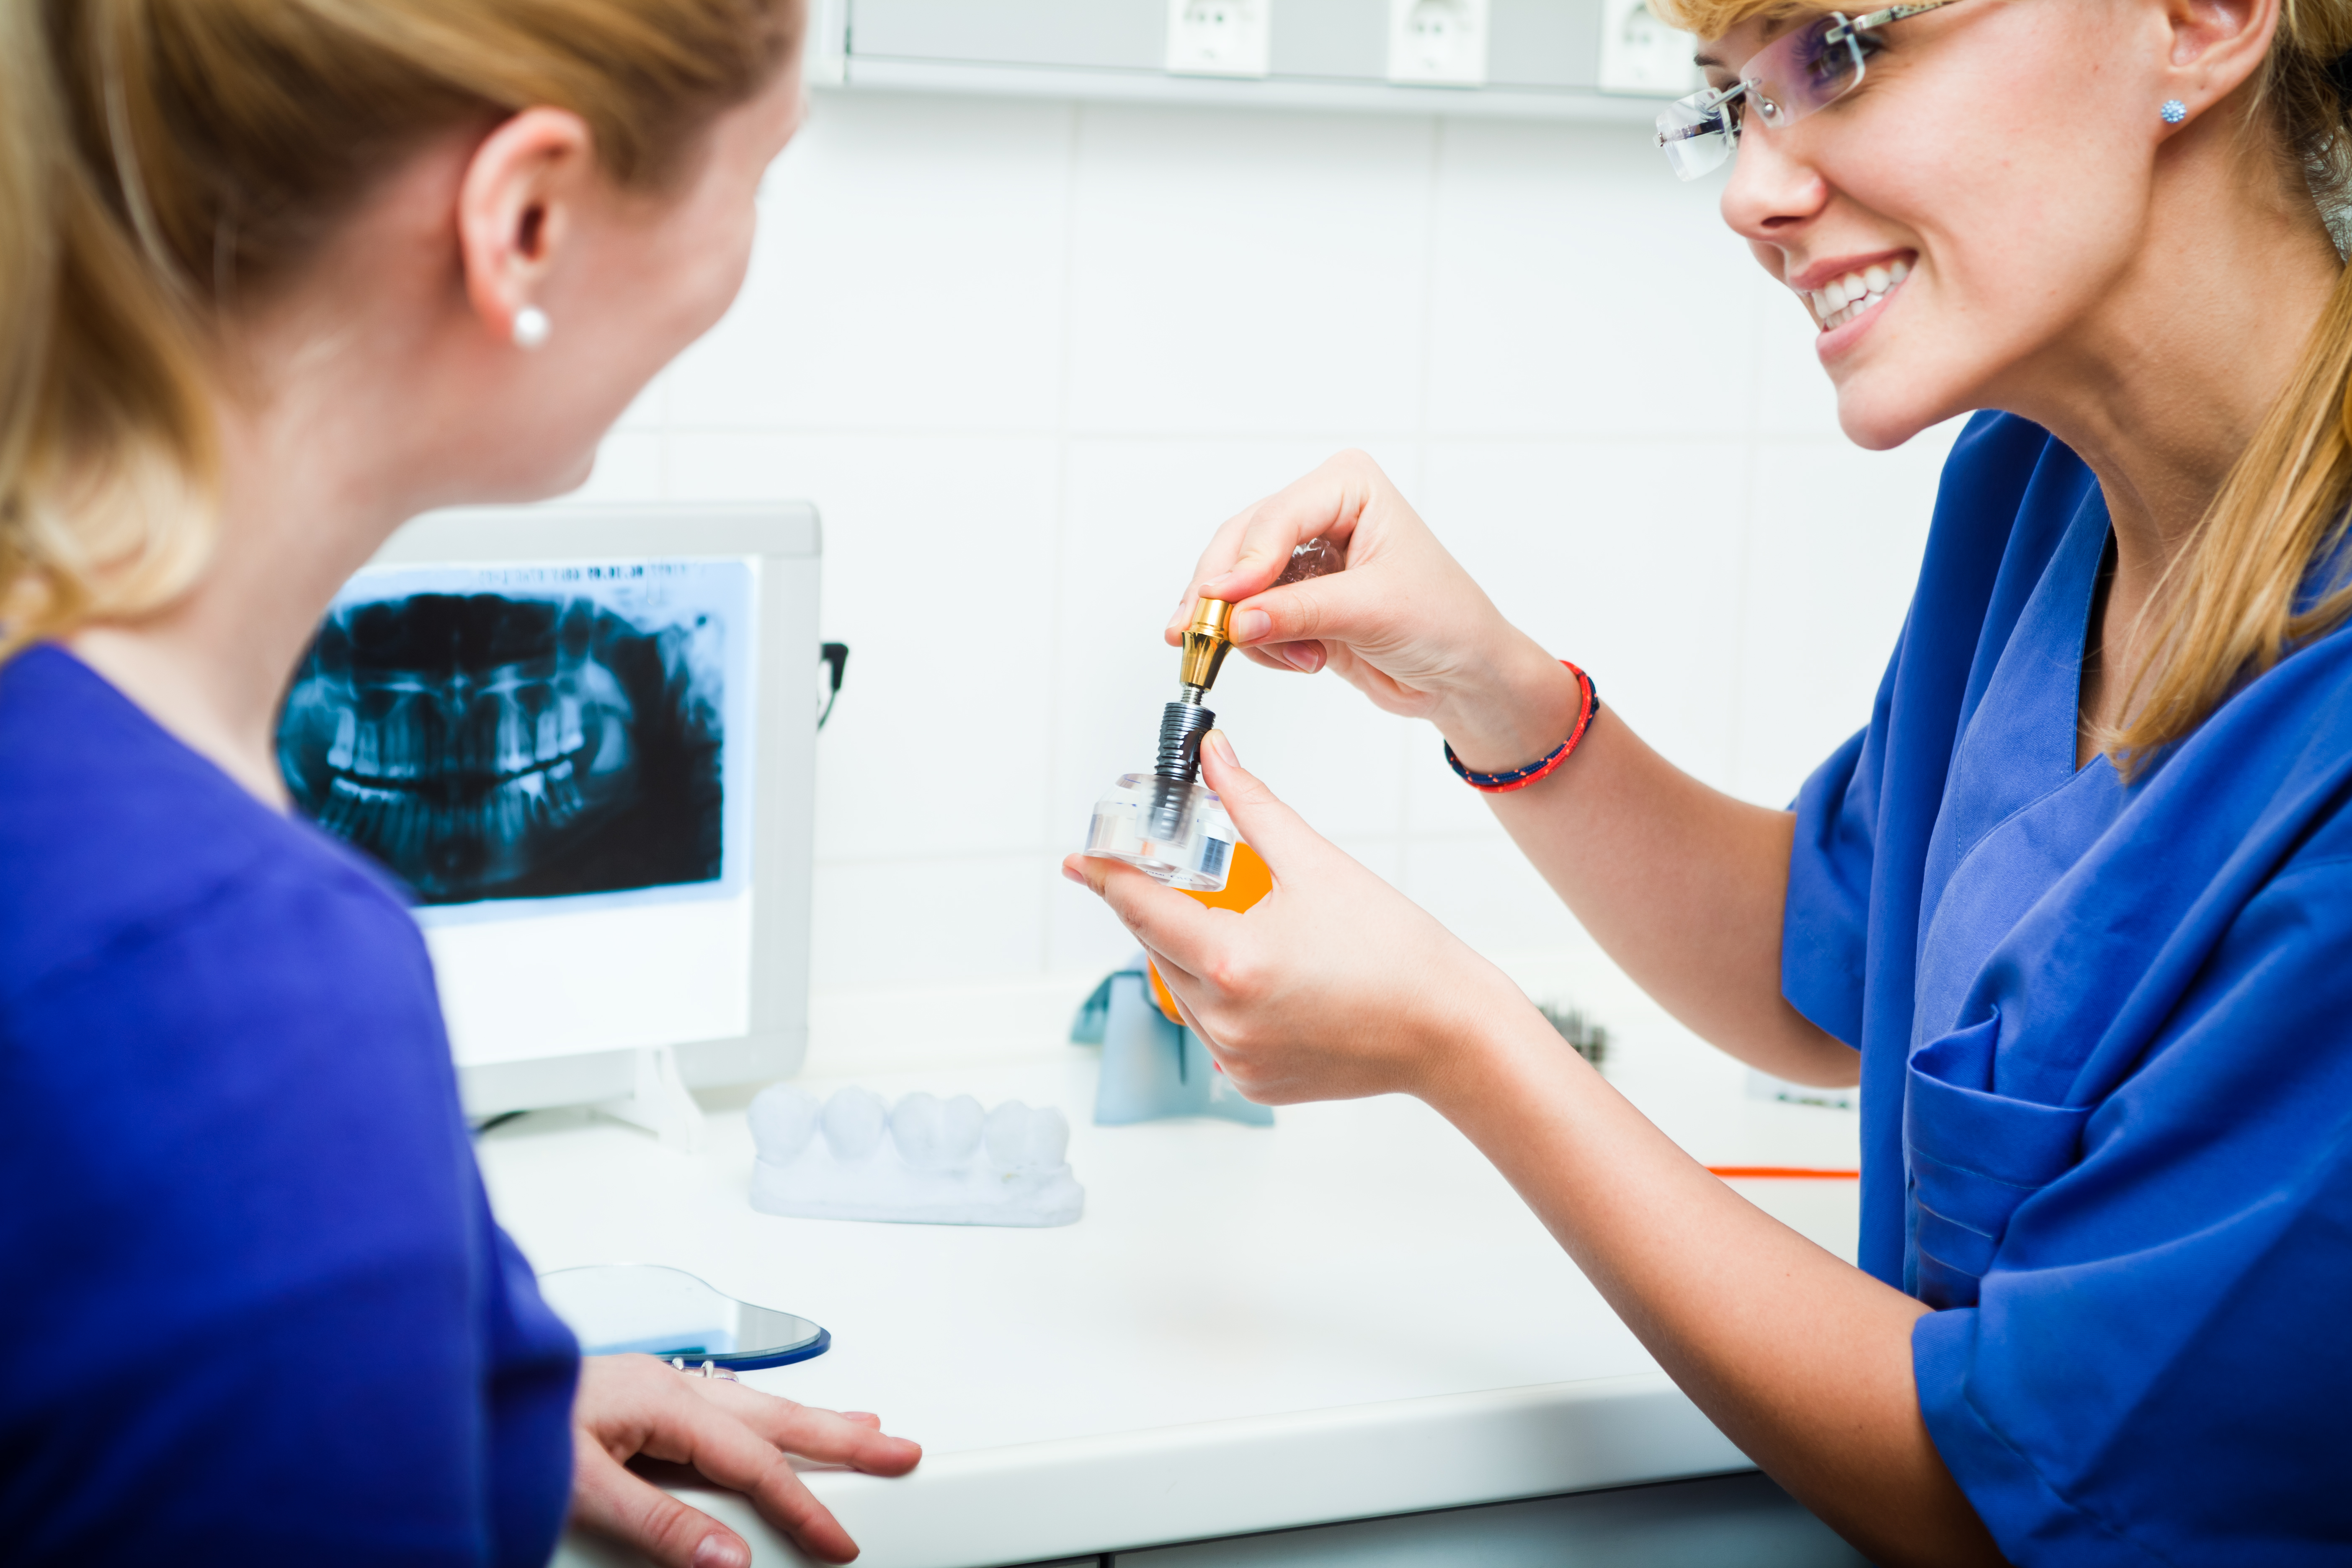 Intervention pour pose d'implant dentaire : procédure, préparation et soins postopératoires article link